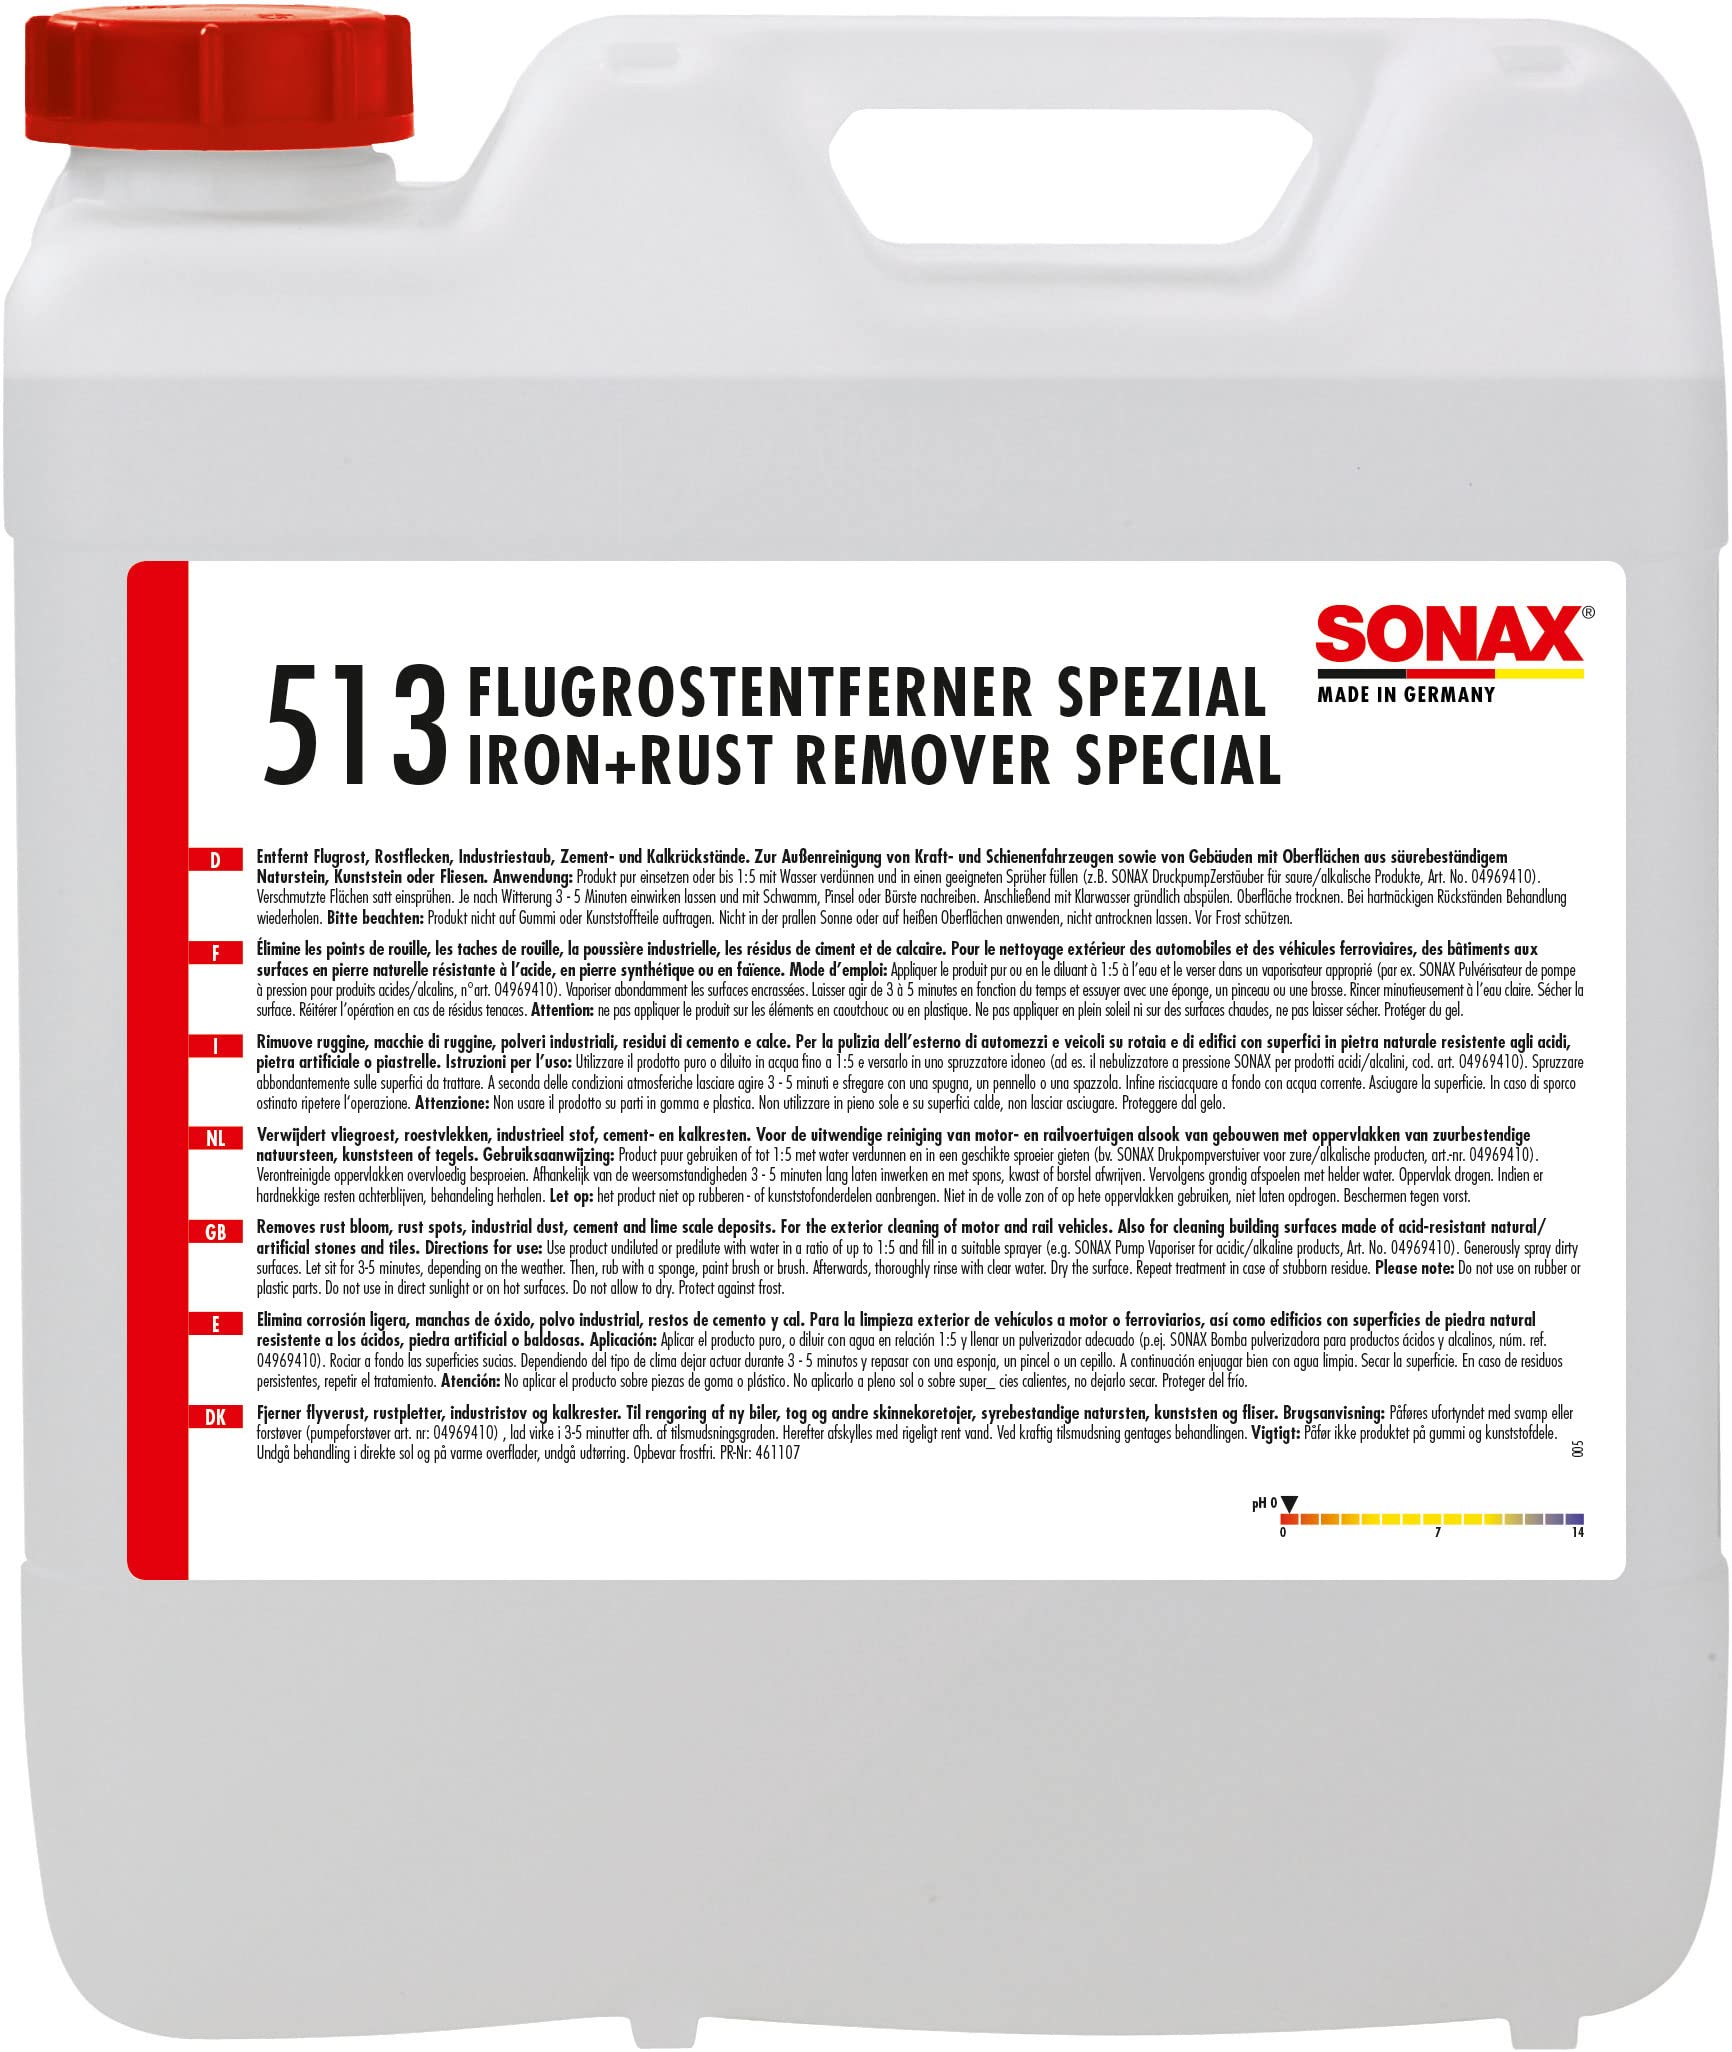 SONAX Flugrostentferner Spezial (10 Liter) säurehaltiger Spezialreiniger, für allee Lackoberflächen und lackierten Kunststoffteilen | Art-Nr. 05136050 von SONAX